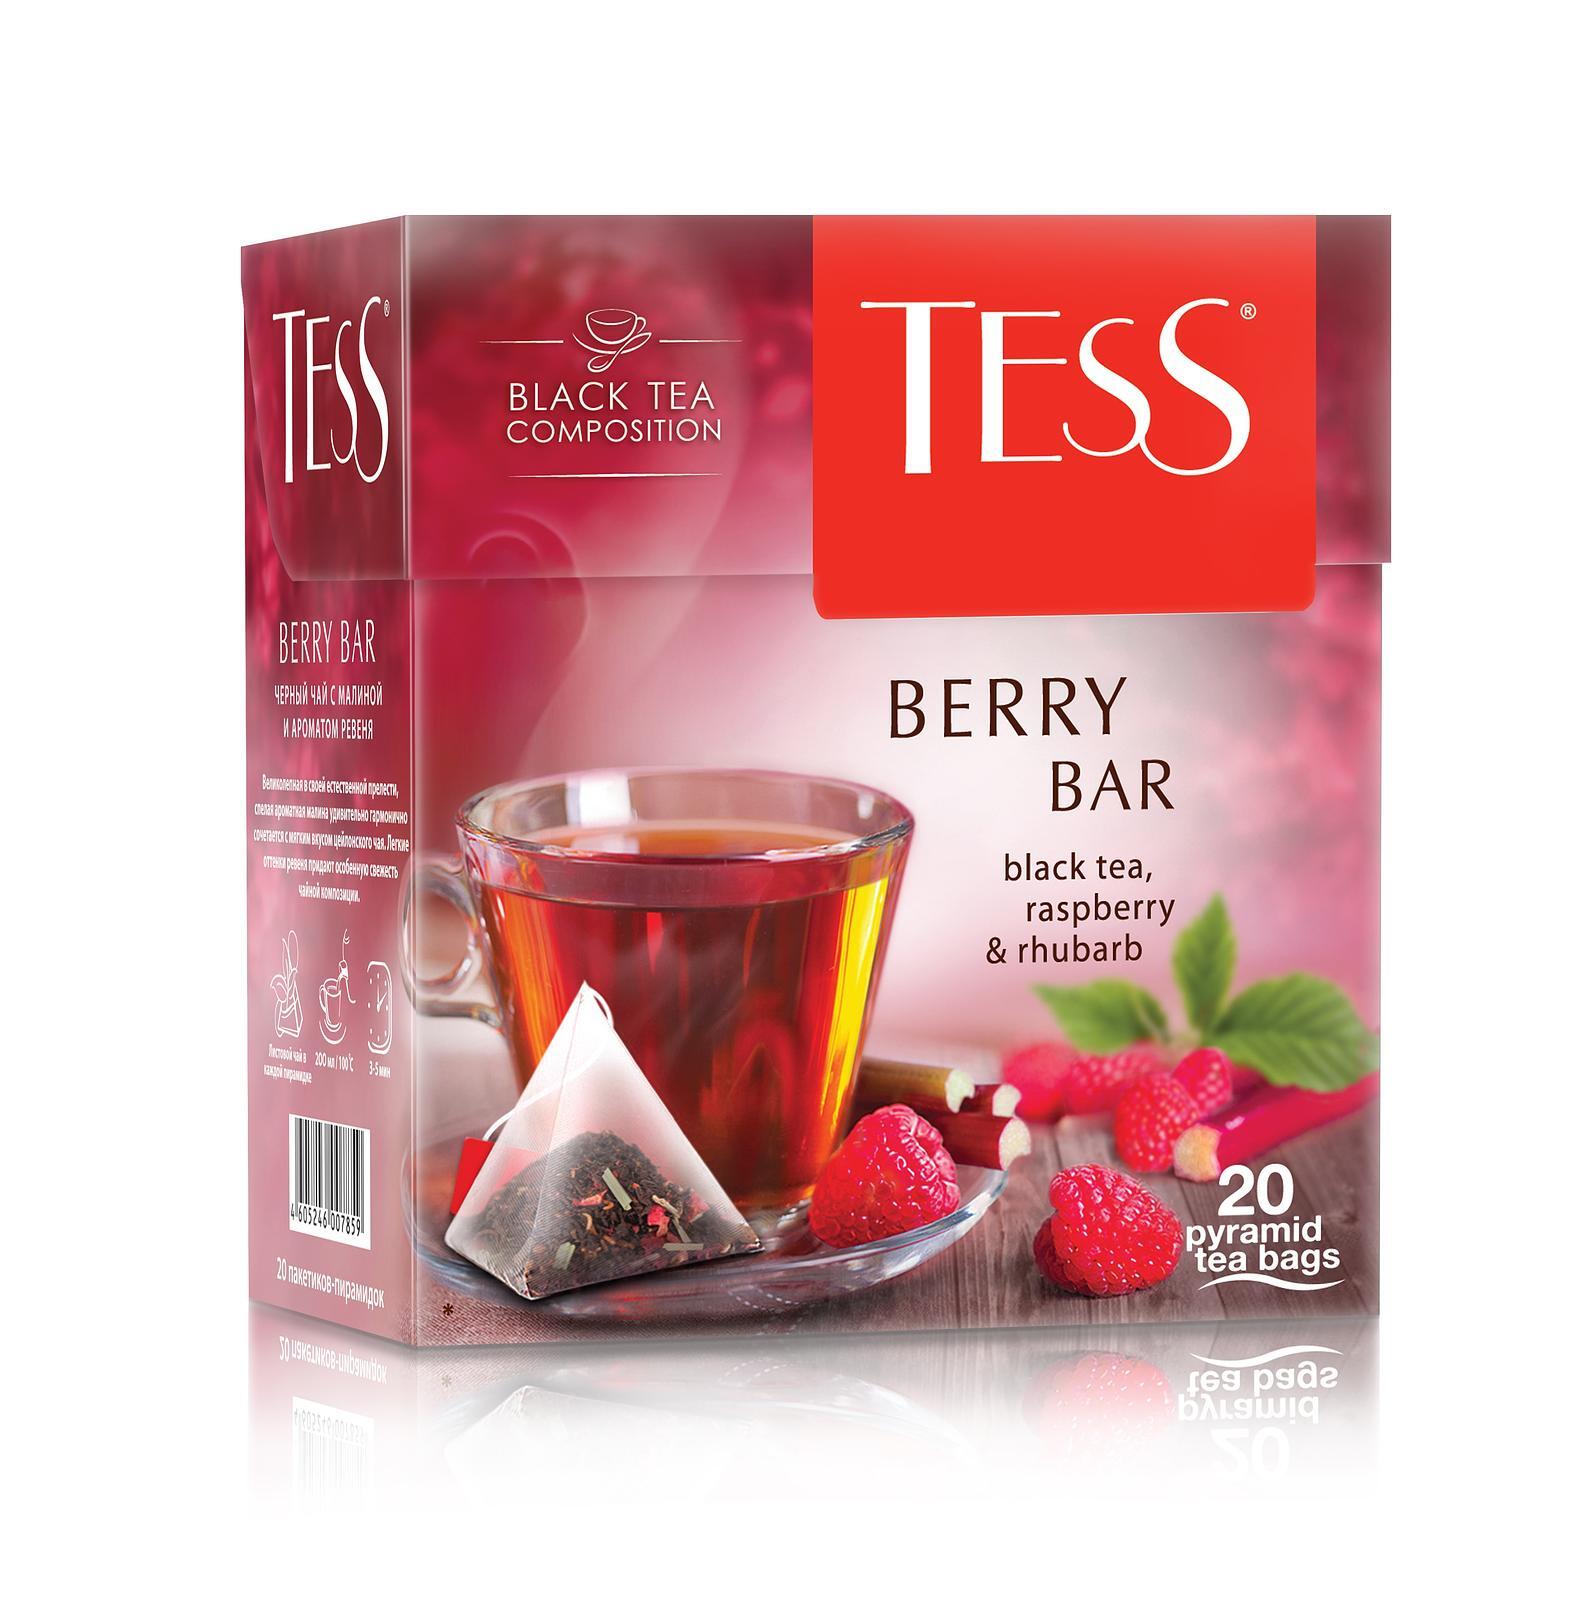 Чай tess шт. Чай Тесс пирамидки Берри бар. Чай черный в пирамидках Tess Berry Bar 20 шт. Чай Tess 20 1.8г черный пирамидки. Чай Tess Berry Bar 1.8г 20пак кор /12.